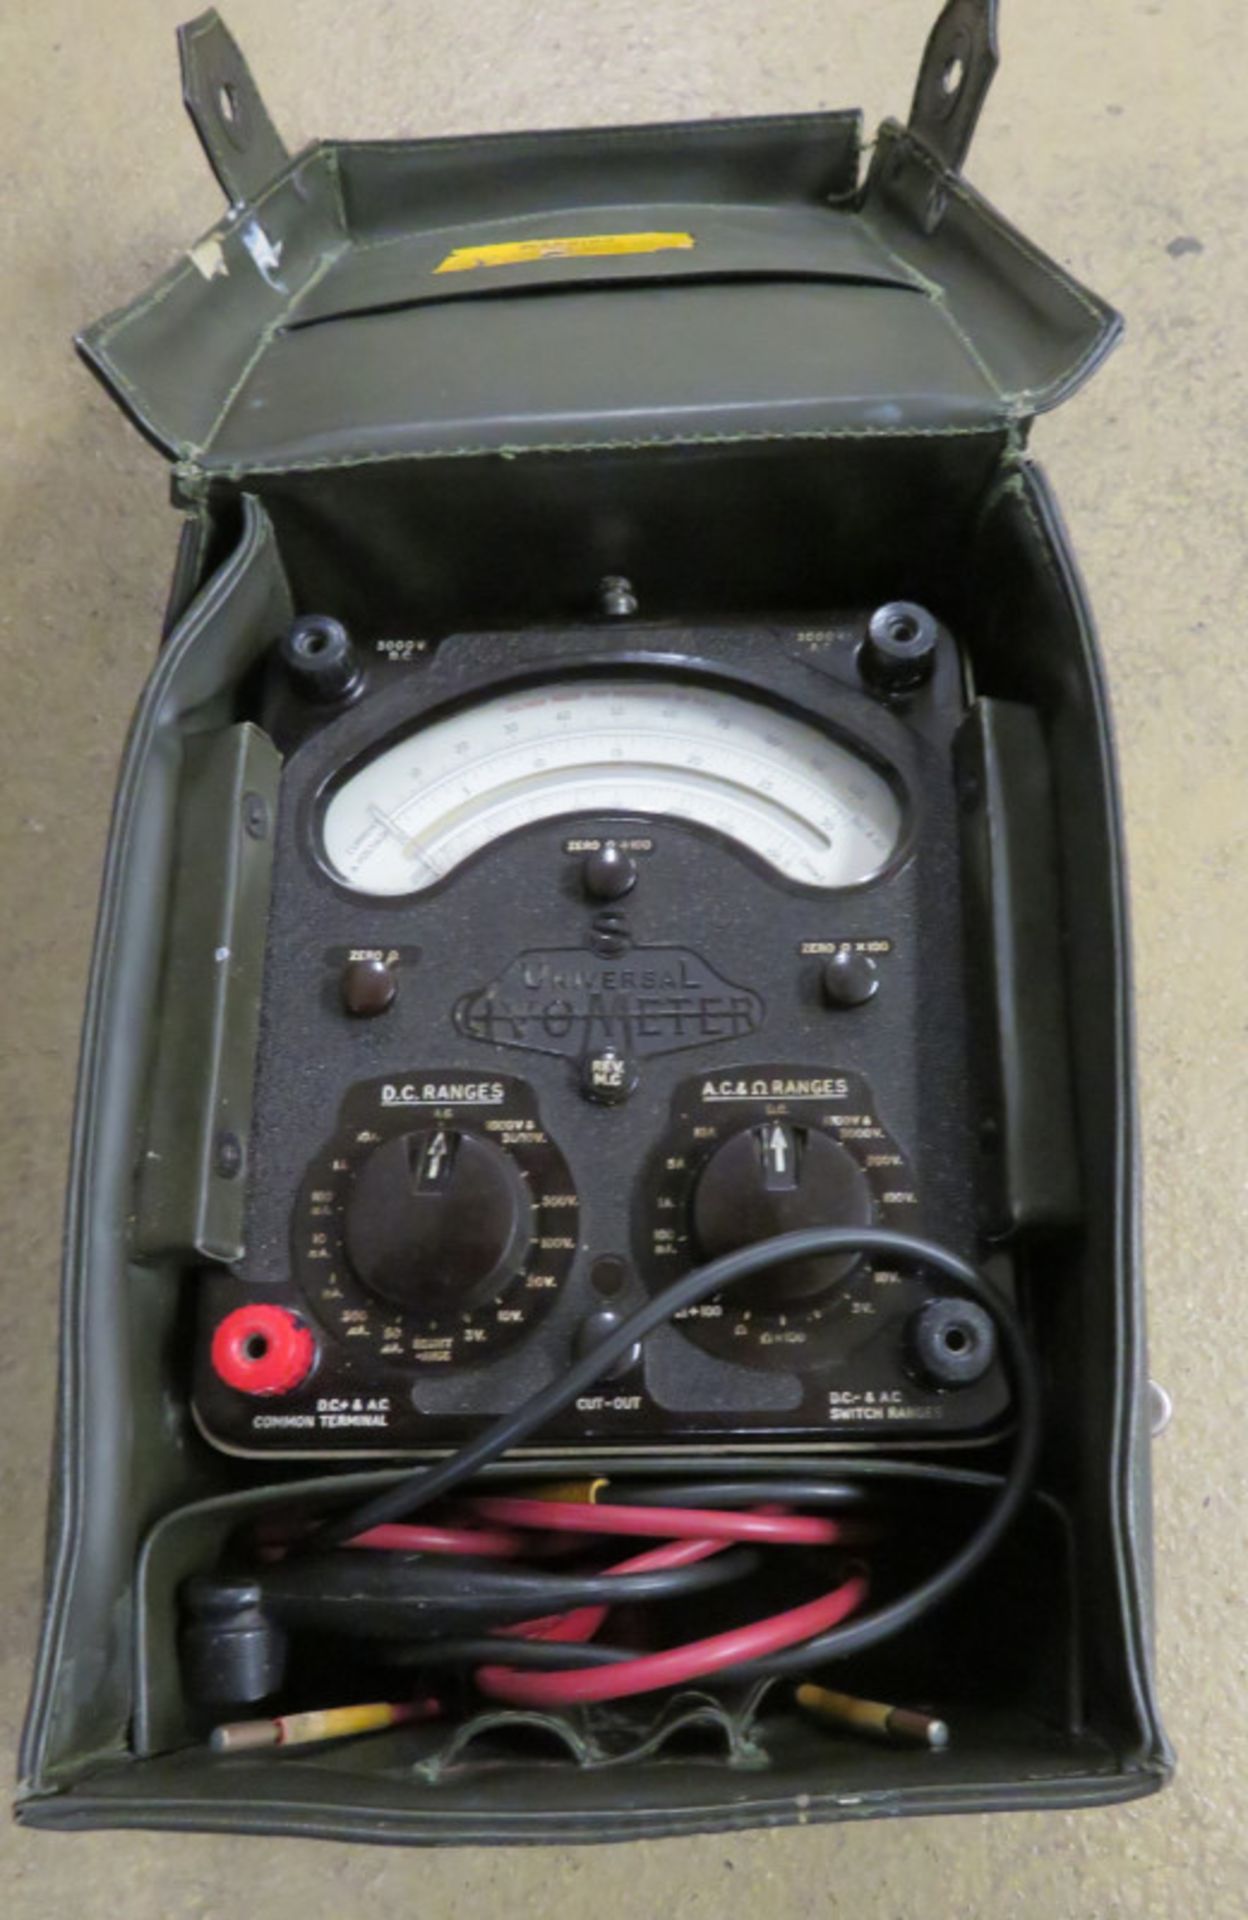 AvoMeter Multimeter & Case